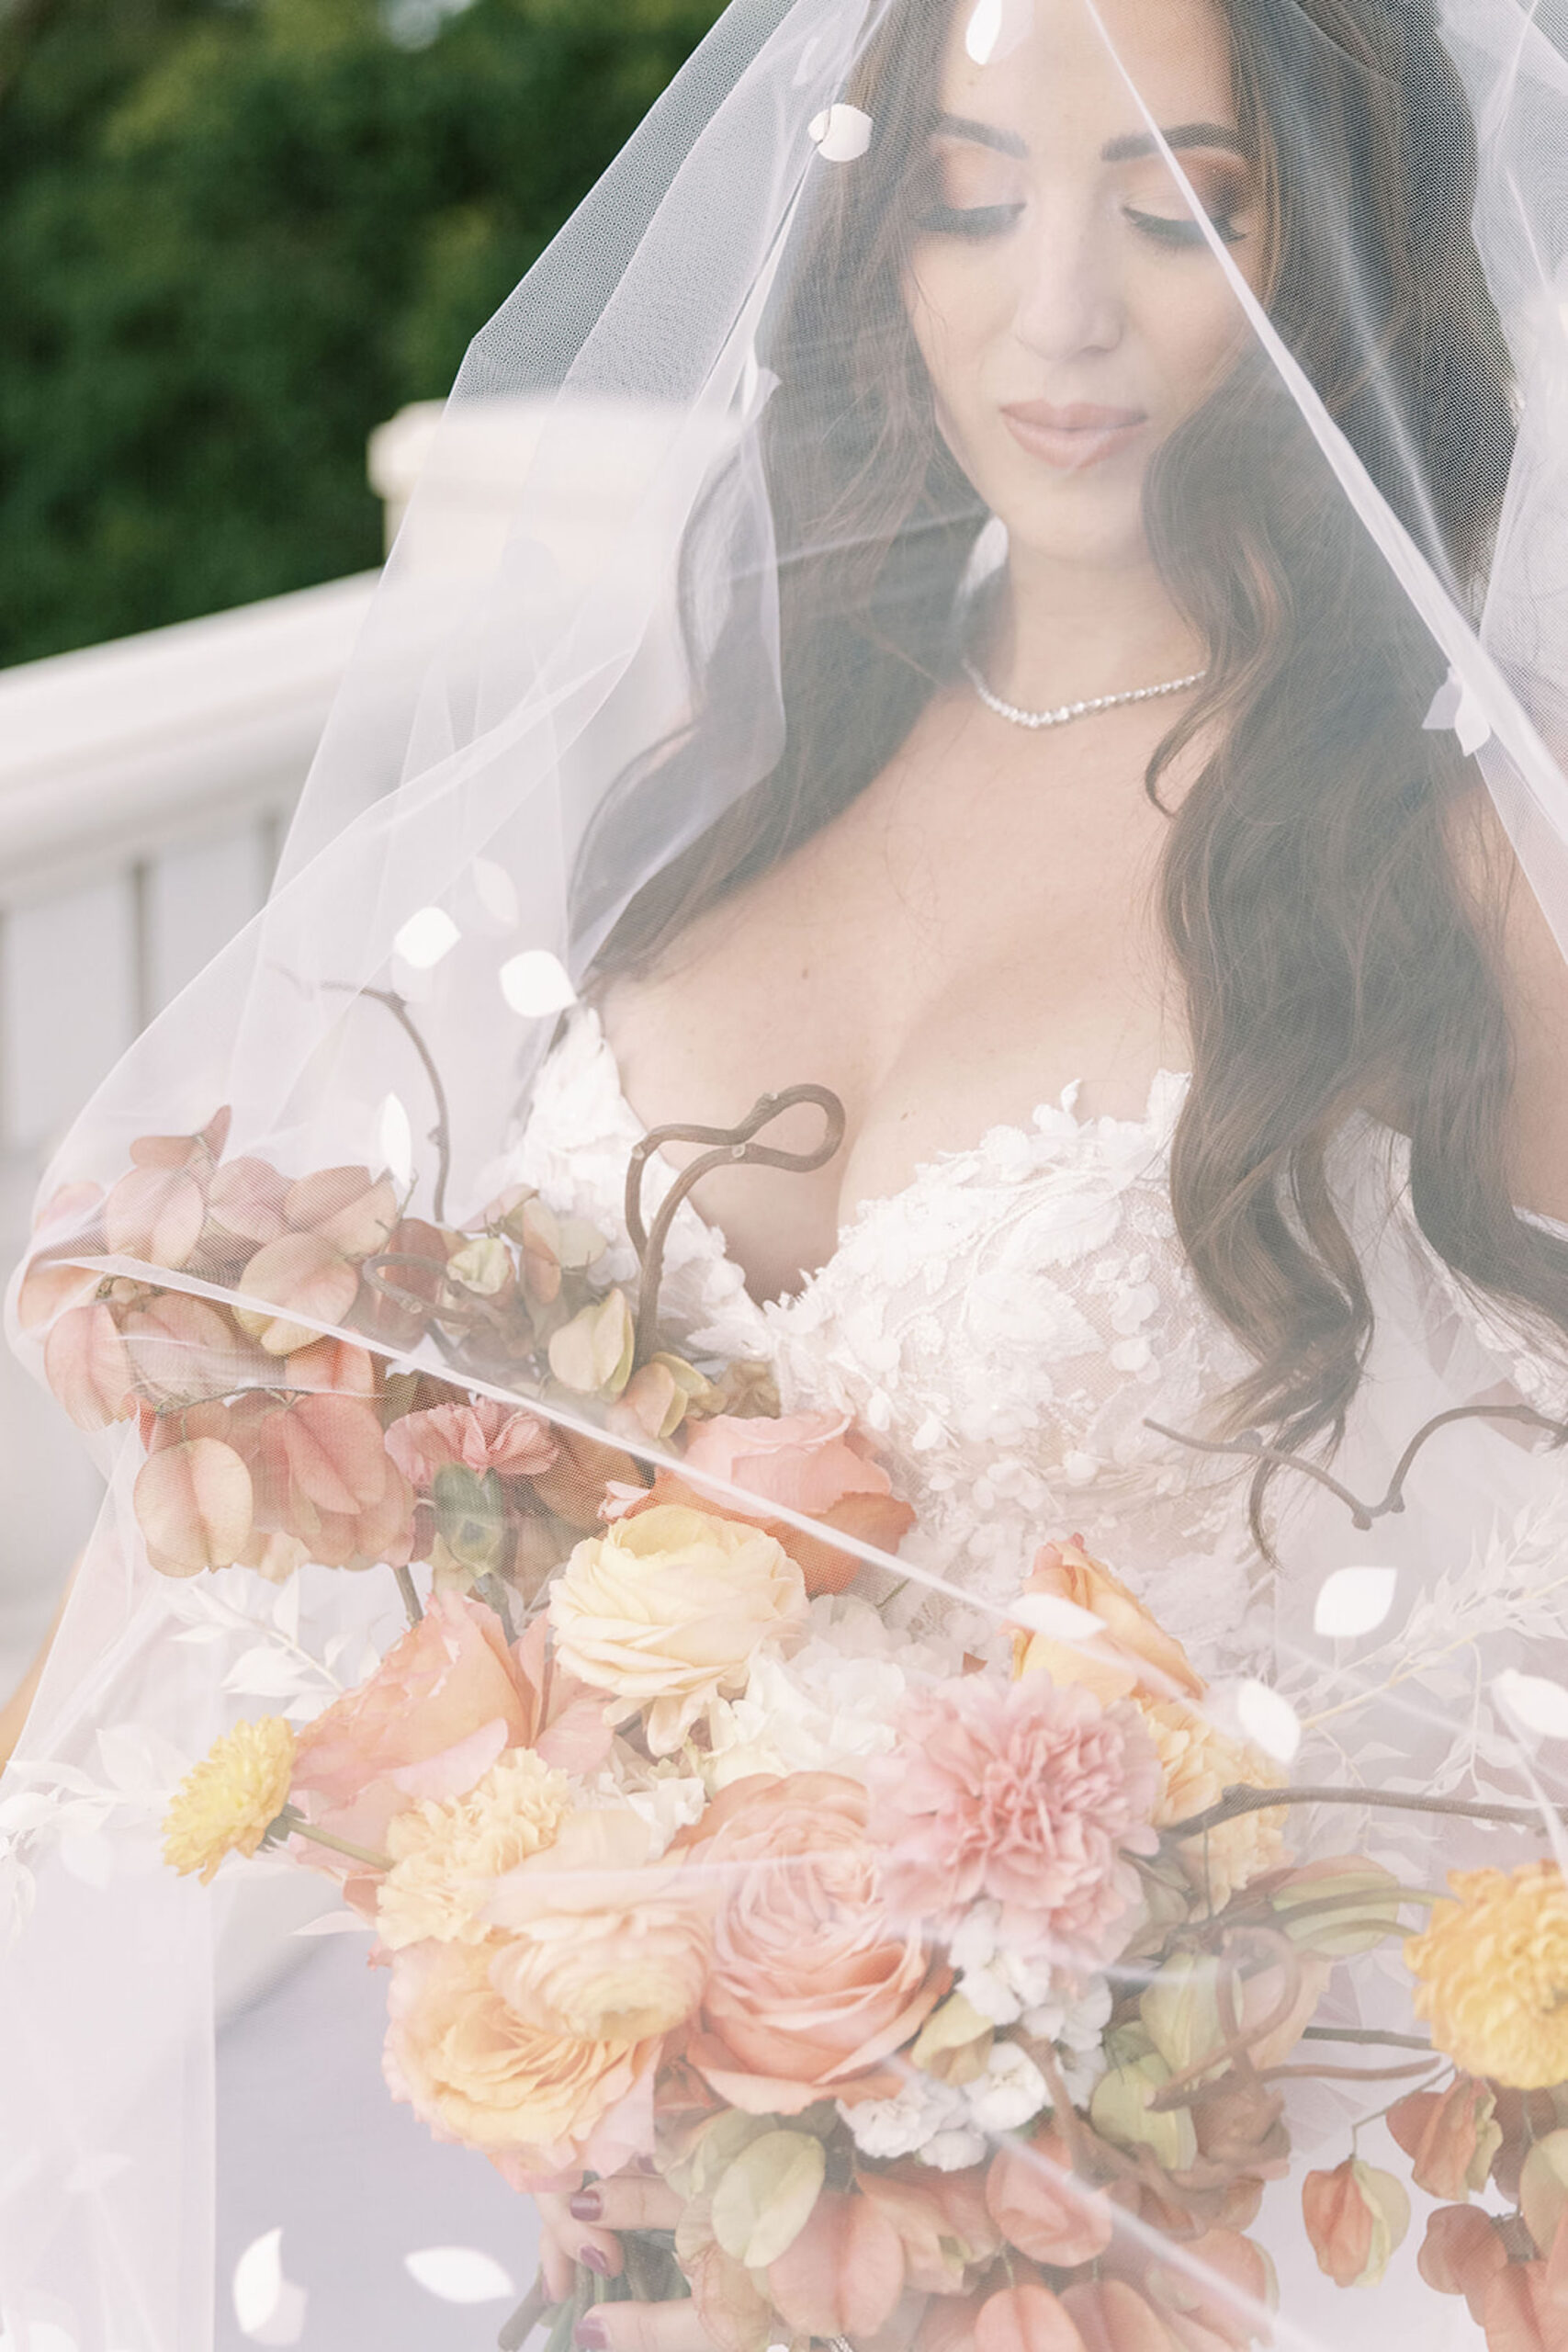 Wavy Half Up Half Down Hairstyle Wedding Bridal Ideas | Tampa Bay Hair and Makeup Artist Adore Bridal